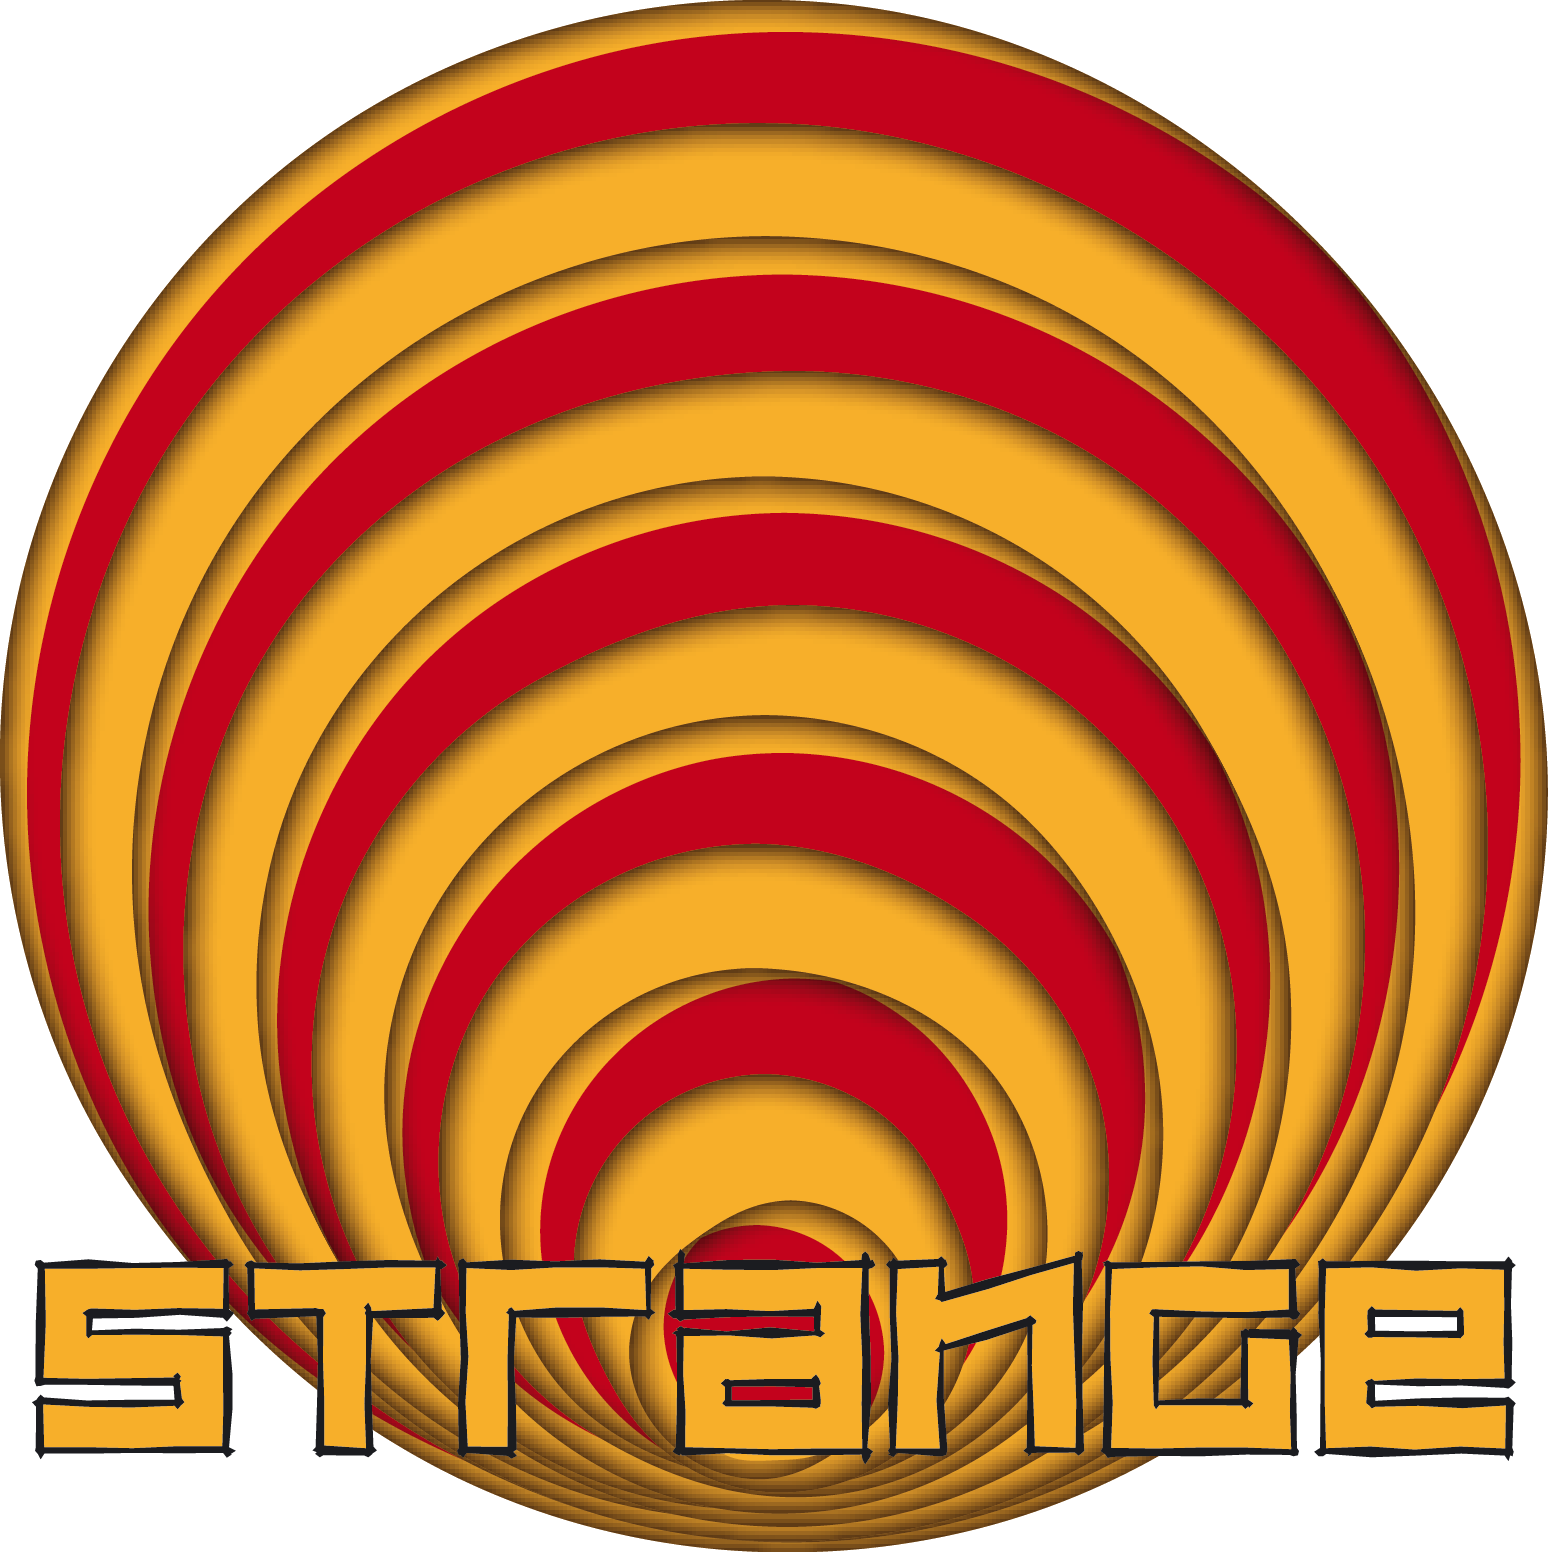 Strange logo 2.png